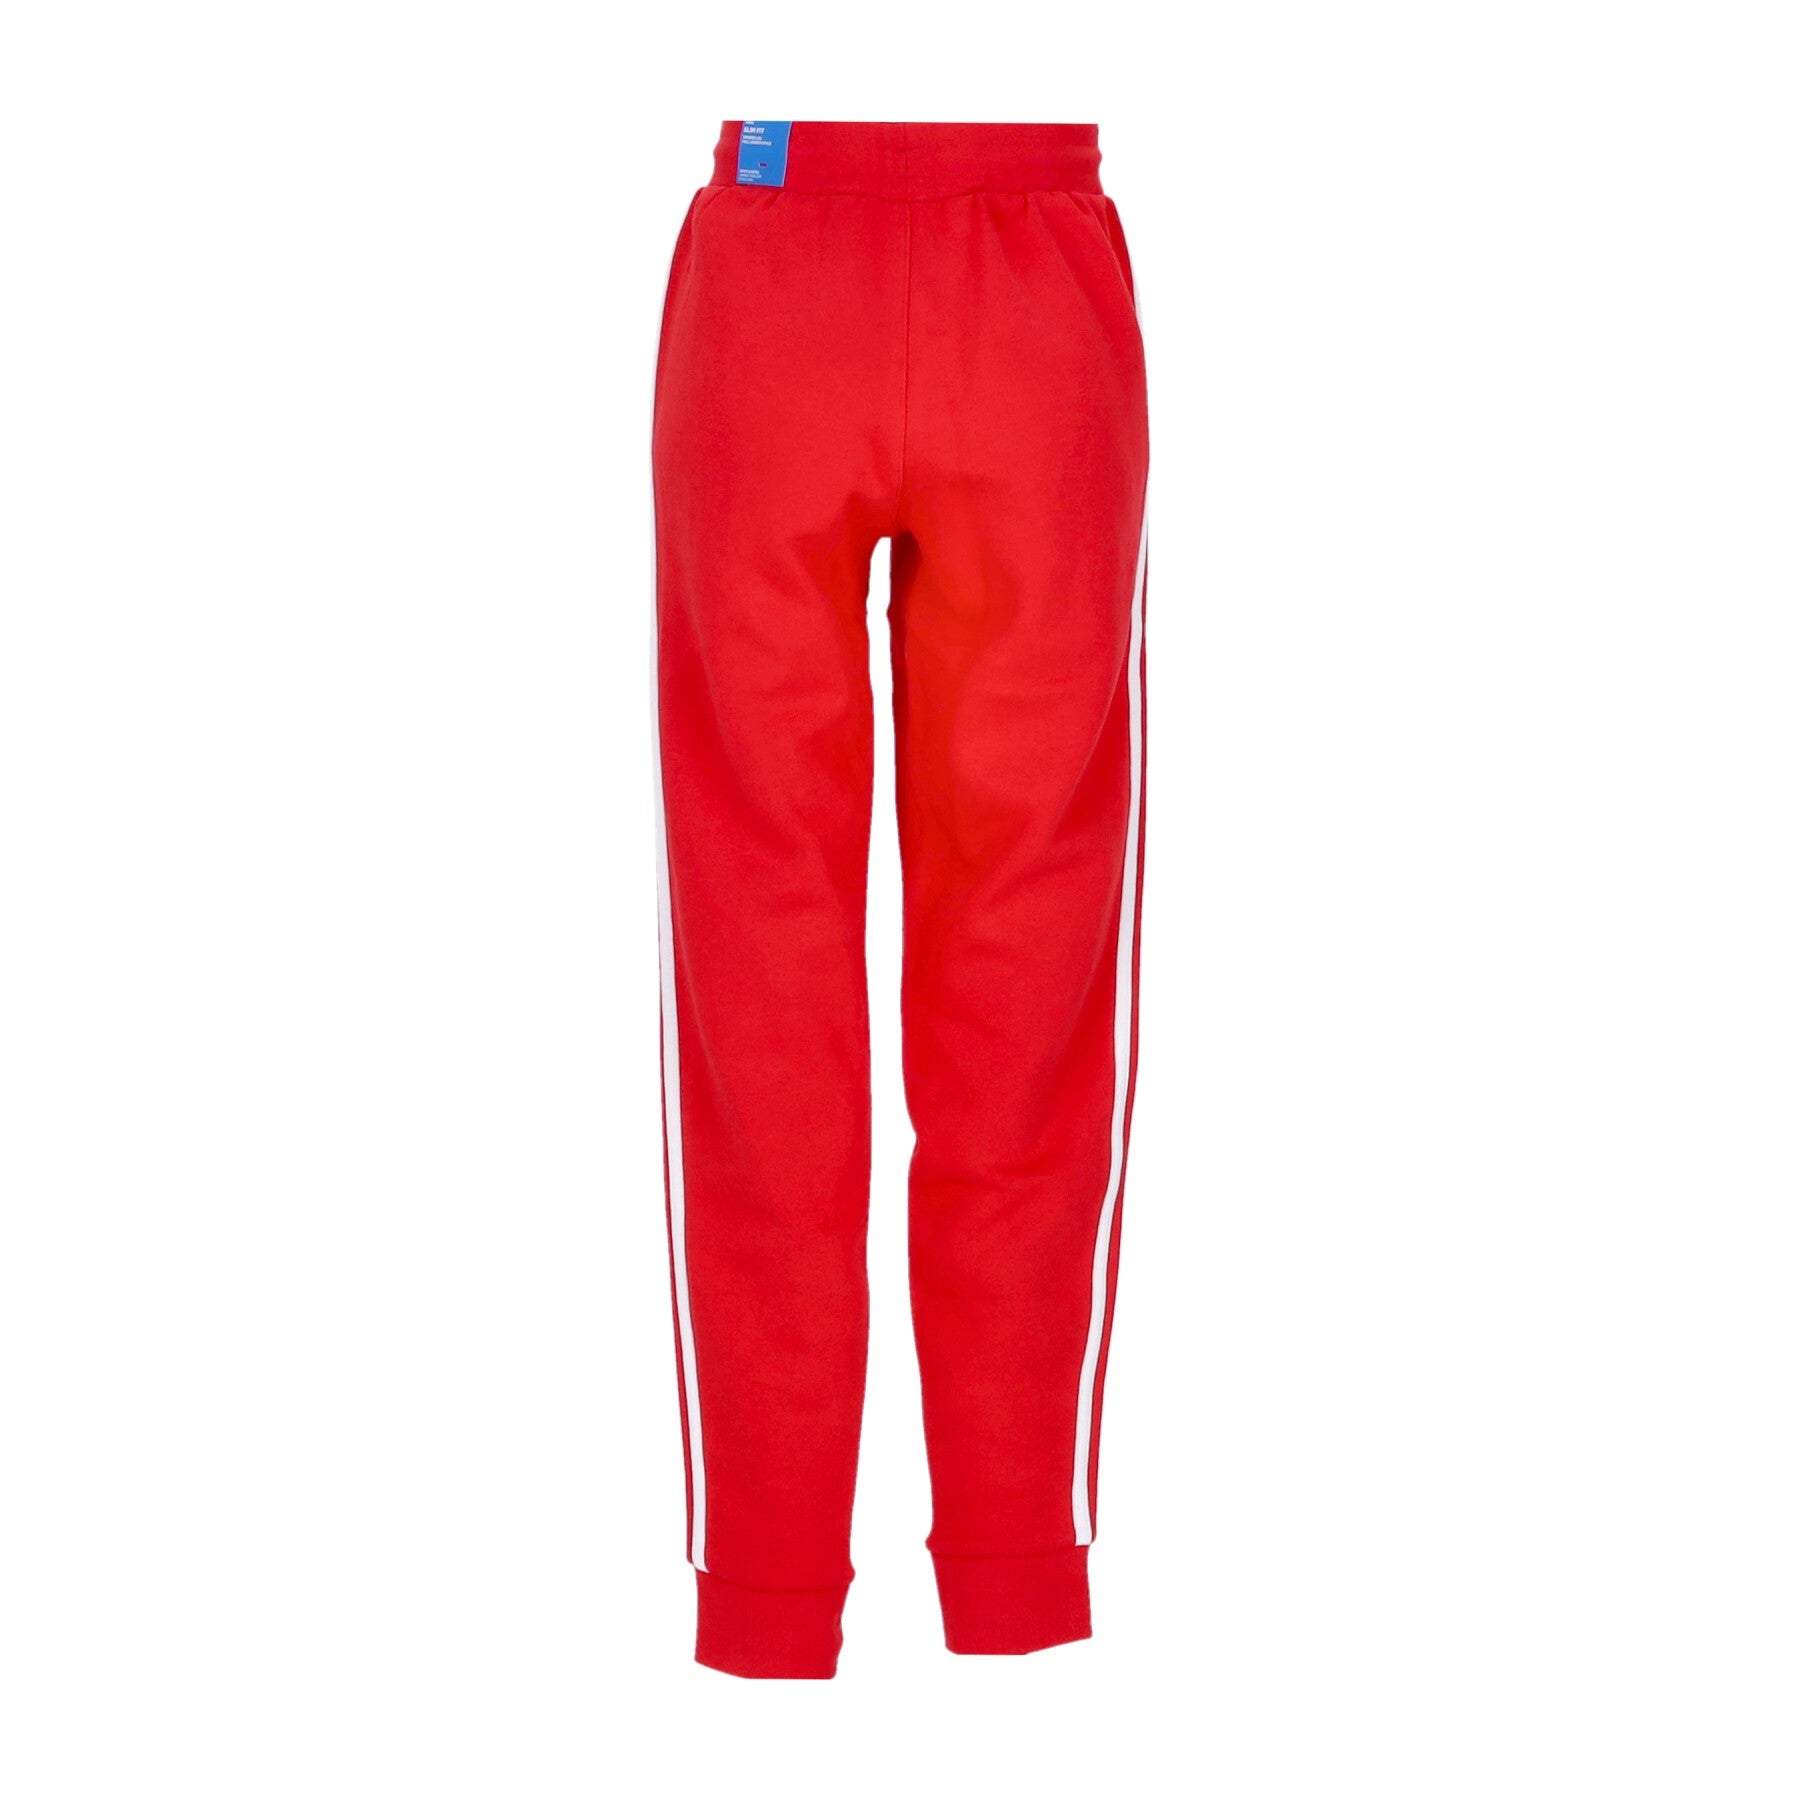 Men's 3-stripes Plush Tracksuit Pants Vivid Red